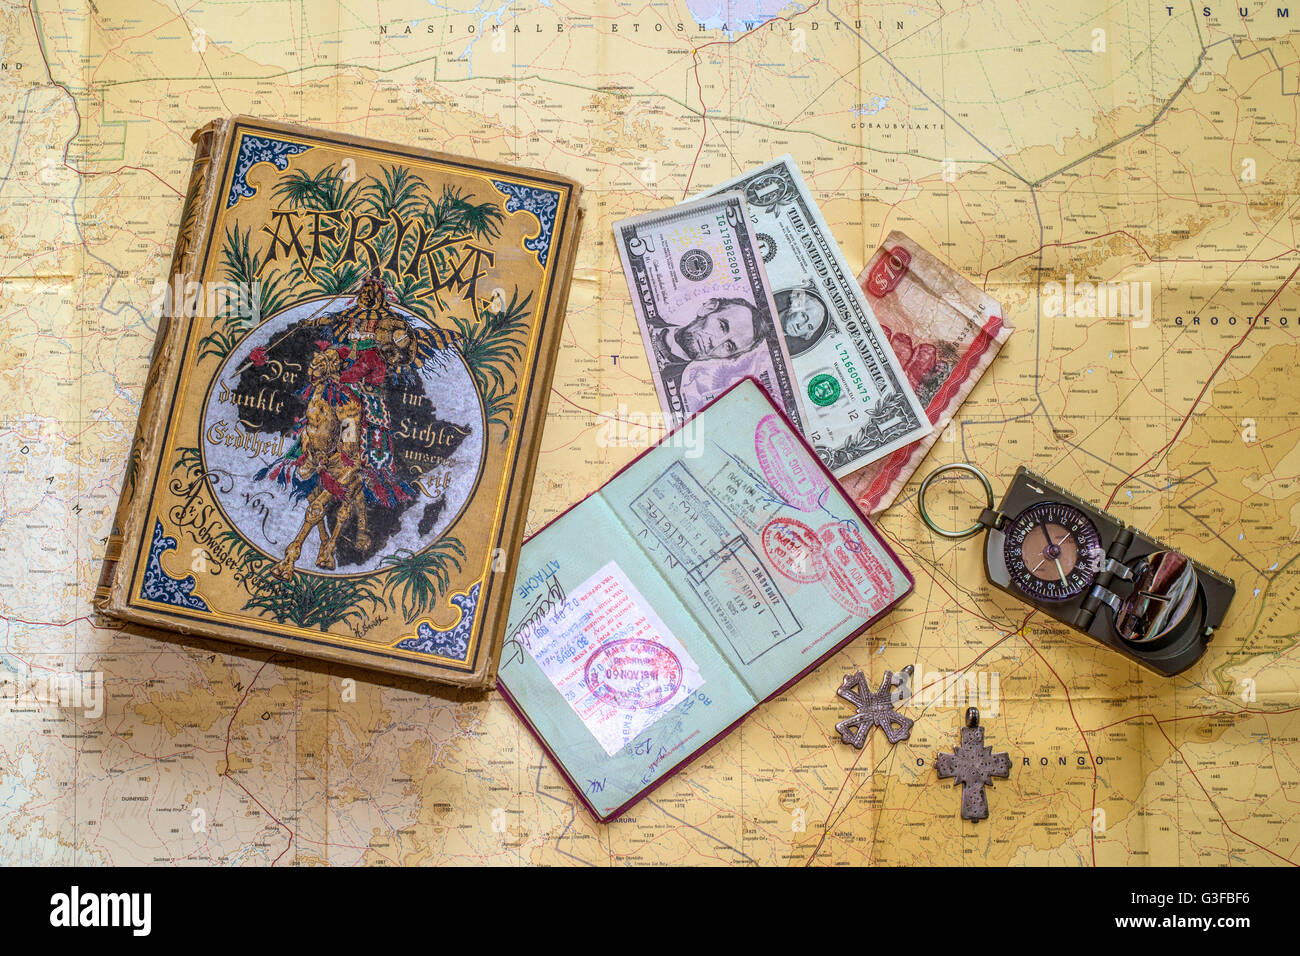 Stillleben mit Erinnerungen, Buch aus dem Jahr 1889, Kompass, Pass, zwei alte äthiopische Kreuze und Geld angeordnet auf einer Karte von Namibia Stockfoto